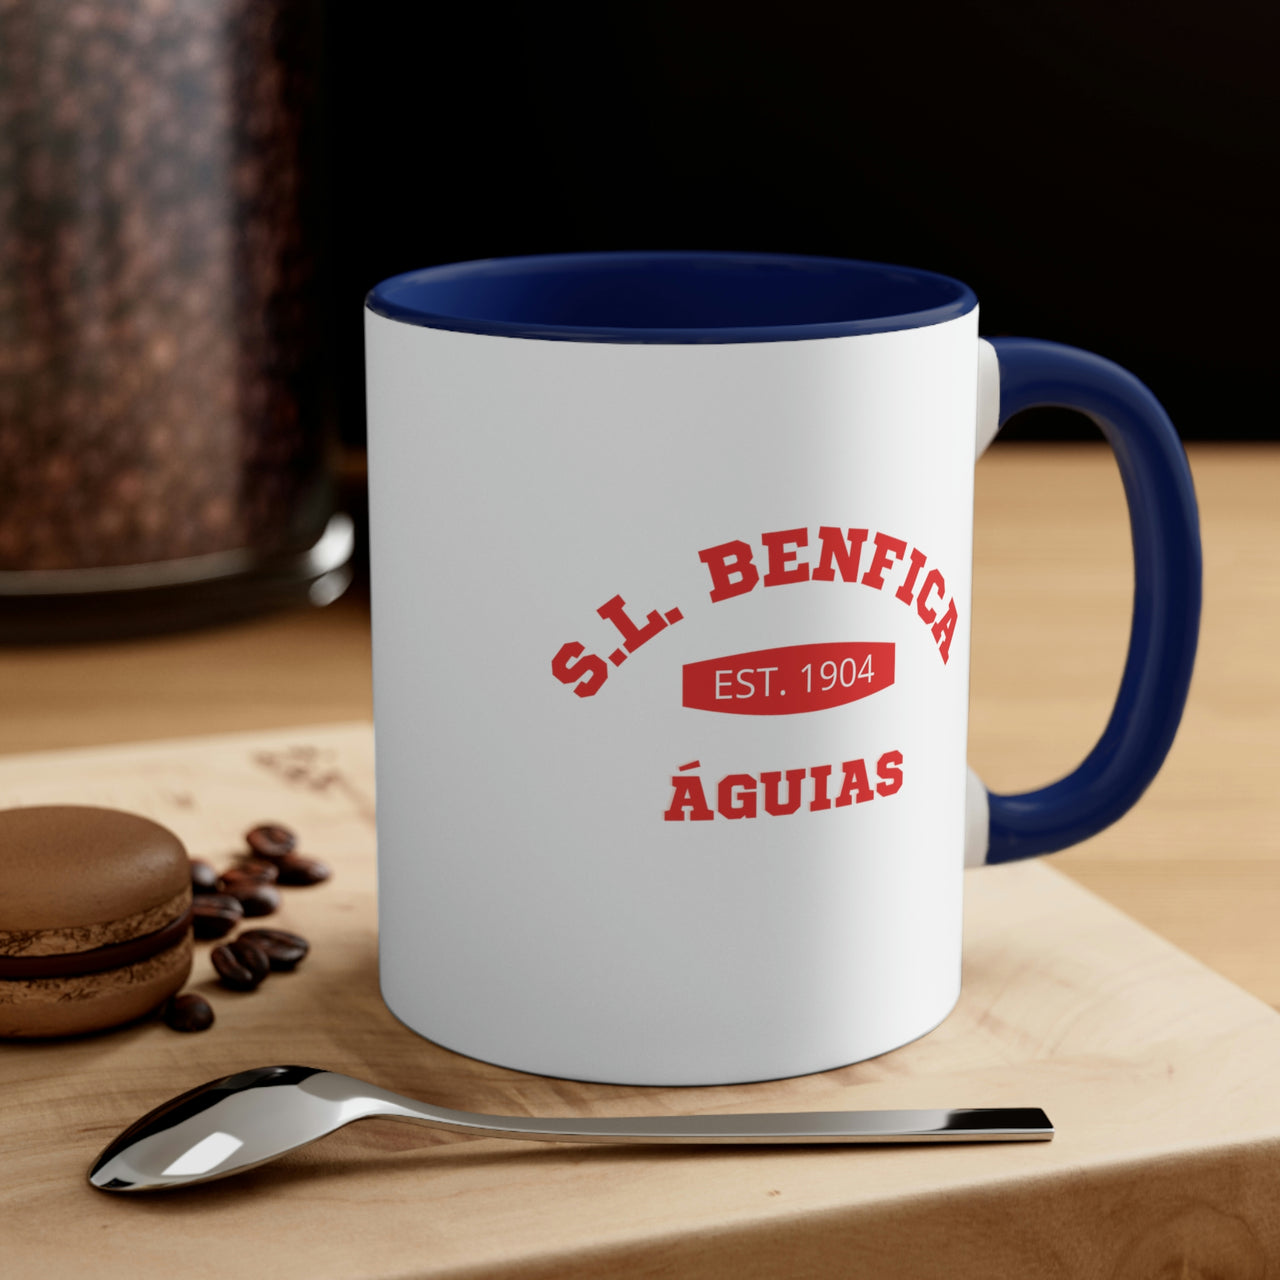 Benfica Coffee Mug, 11oz